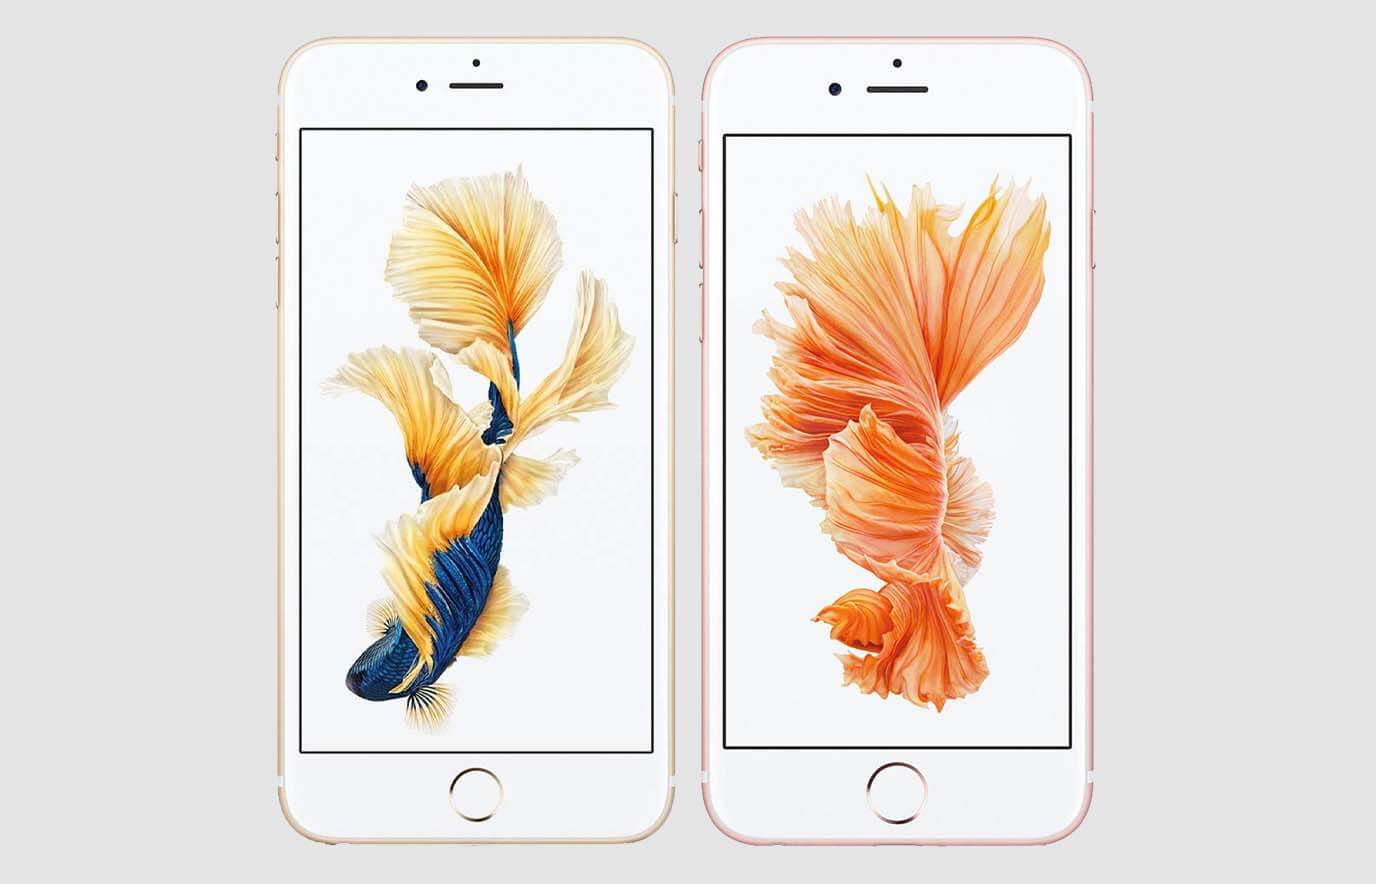 baas meer Toeschouwer Het verschil tussen de iPhone 6 en iPhone 6S